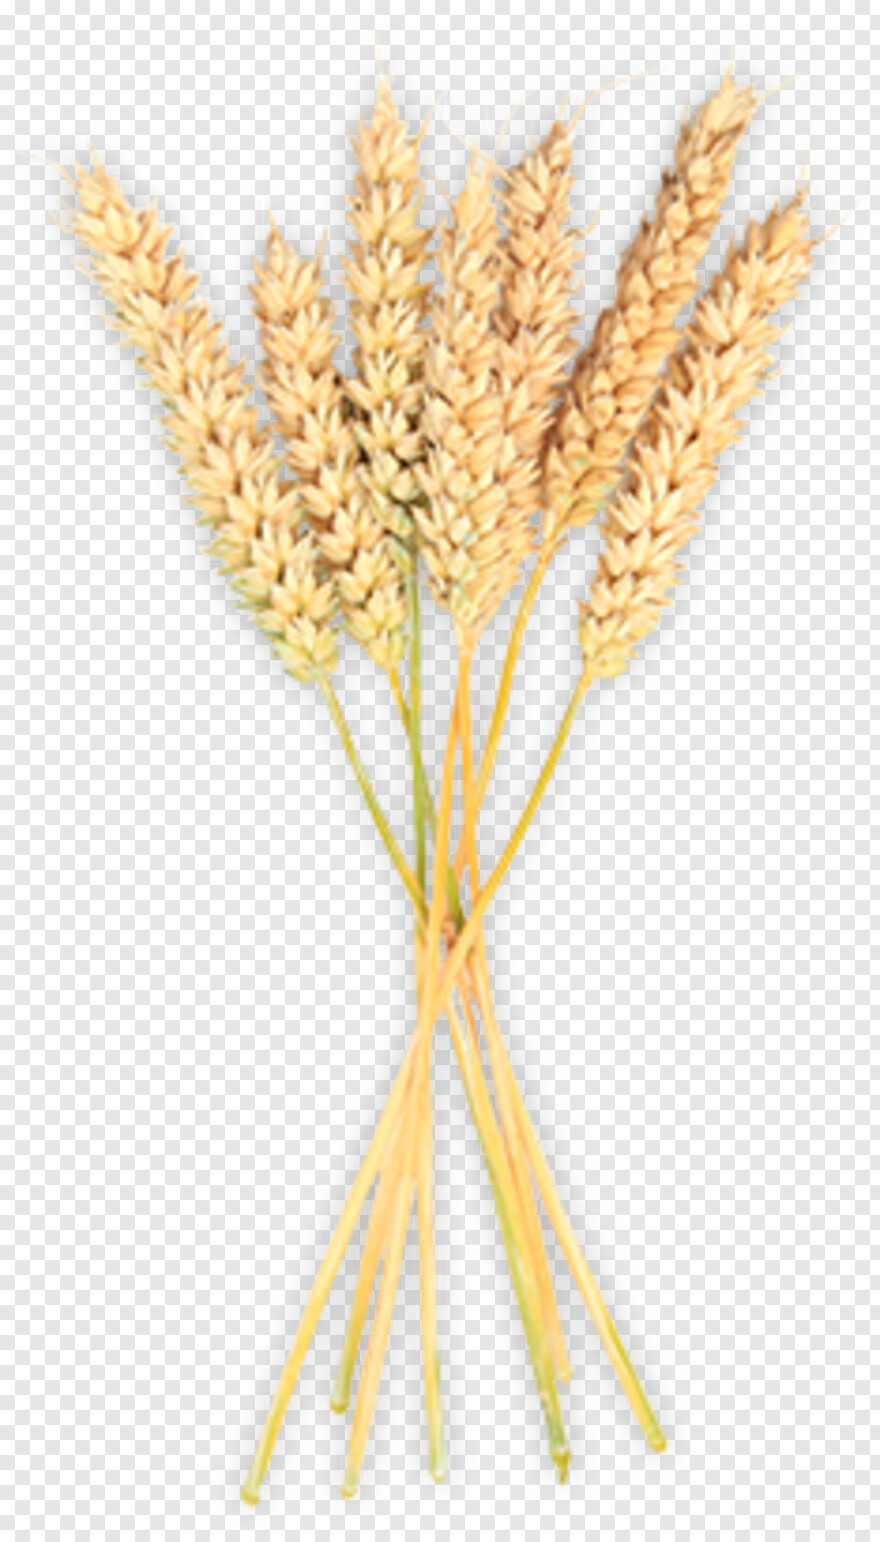 wheat-icon # 801247